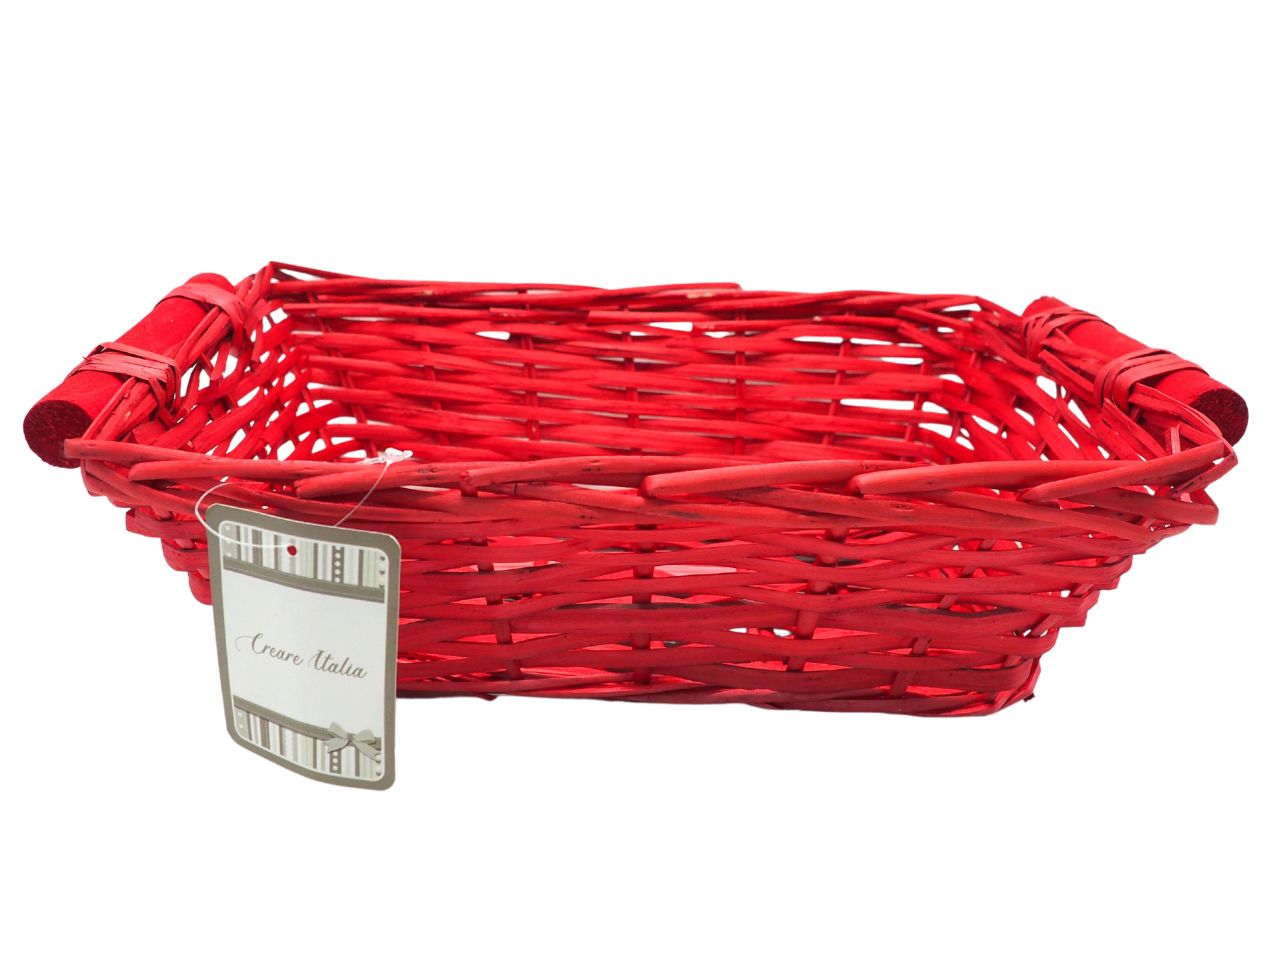 Cesto rettangolare in legno colore rosso con maniglie misura